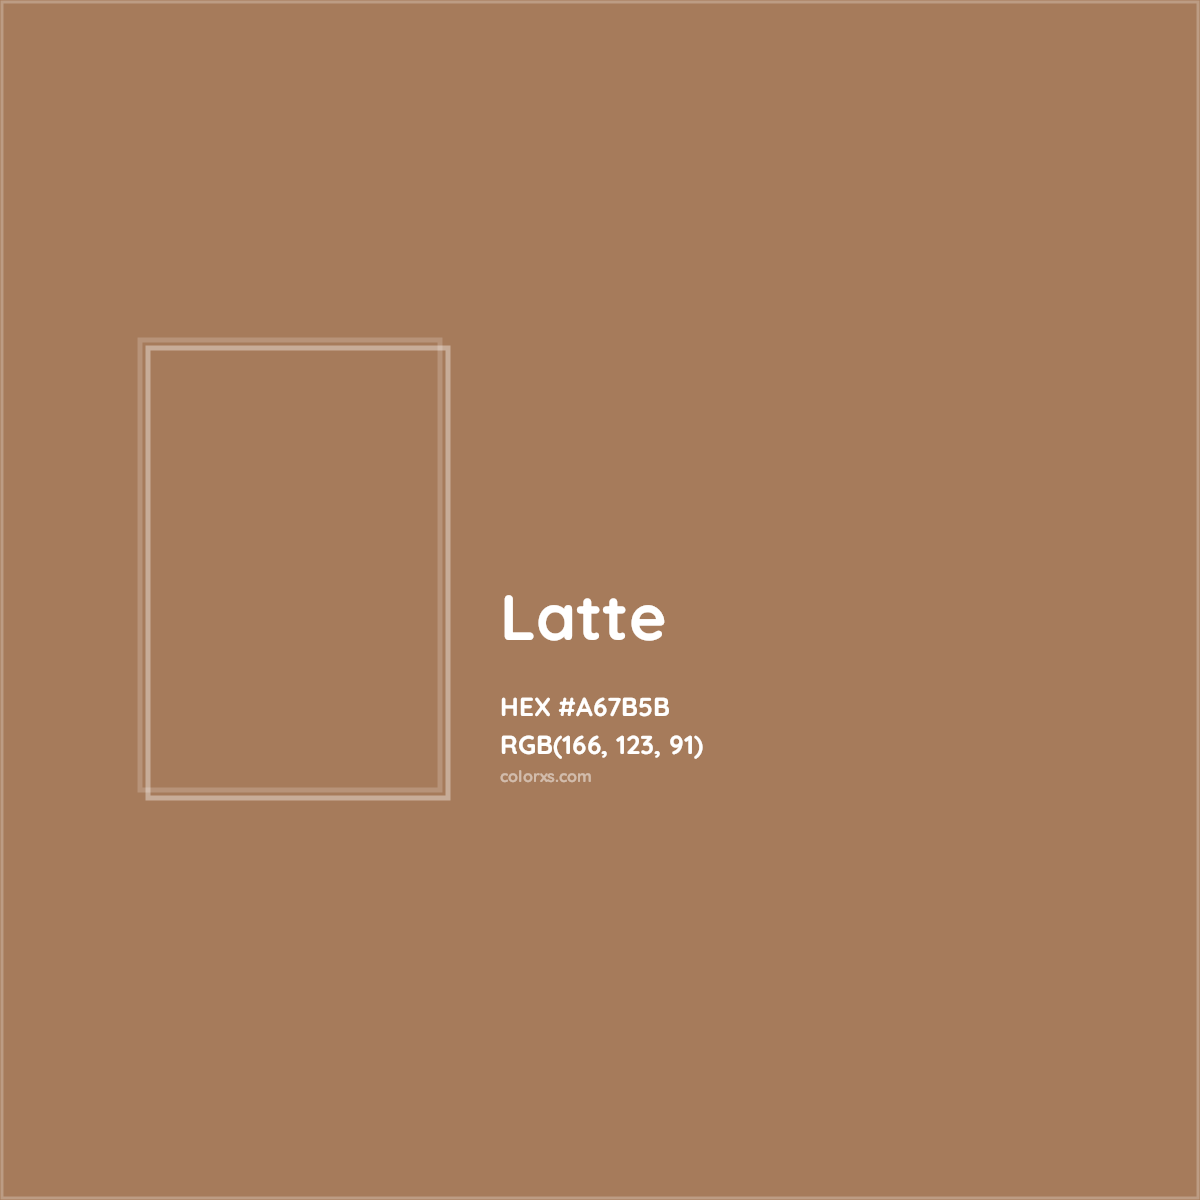 HEX #A67B5B Latte Color - Color Code